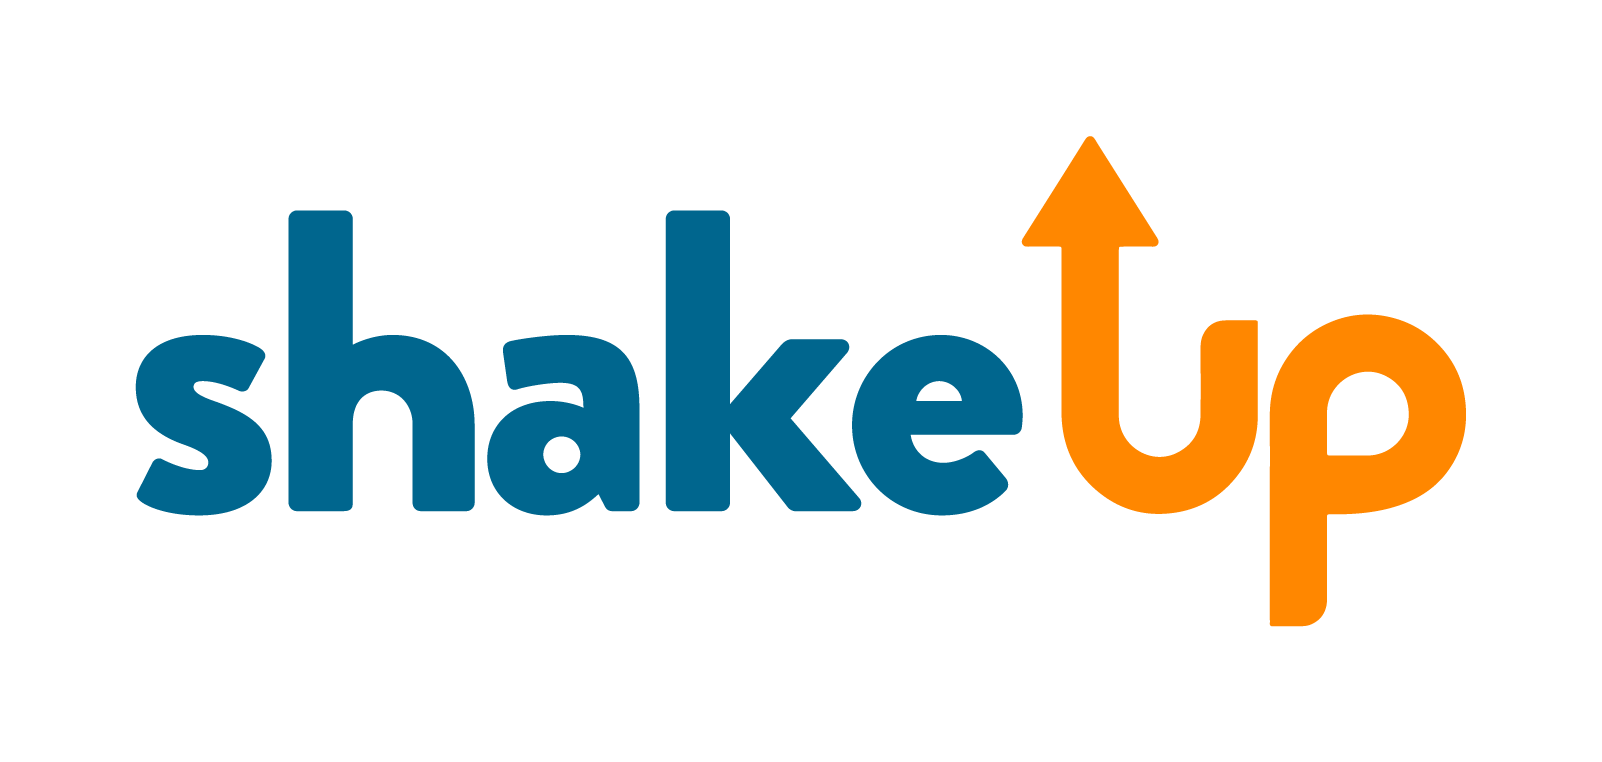 shakeUp logo